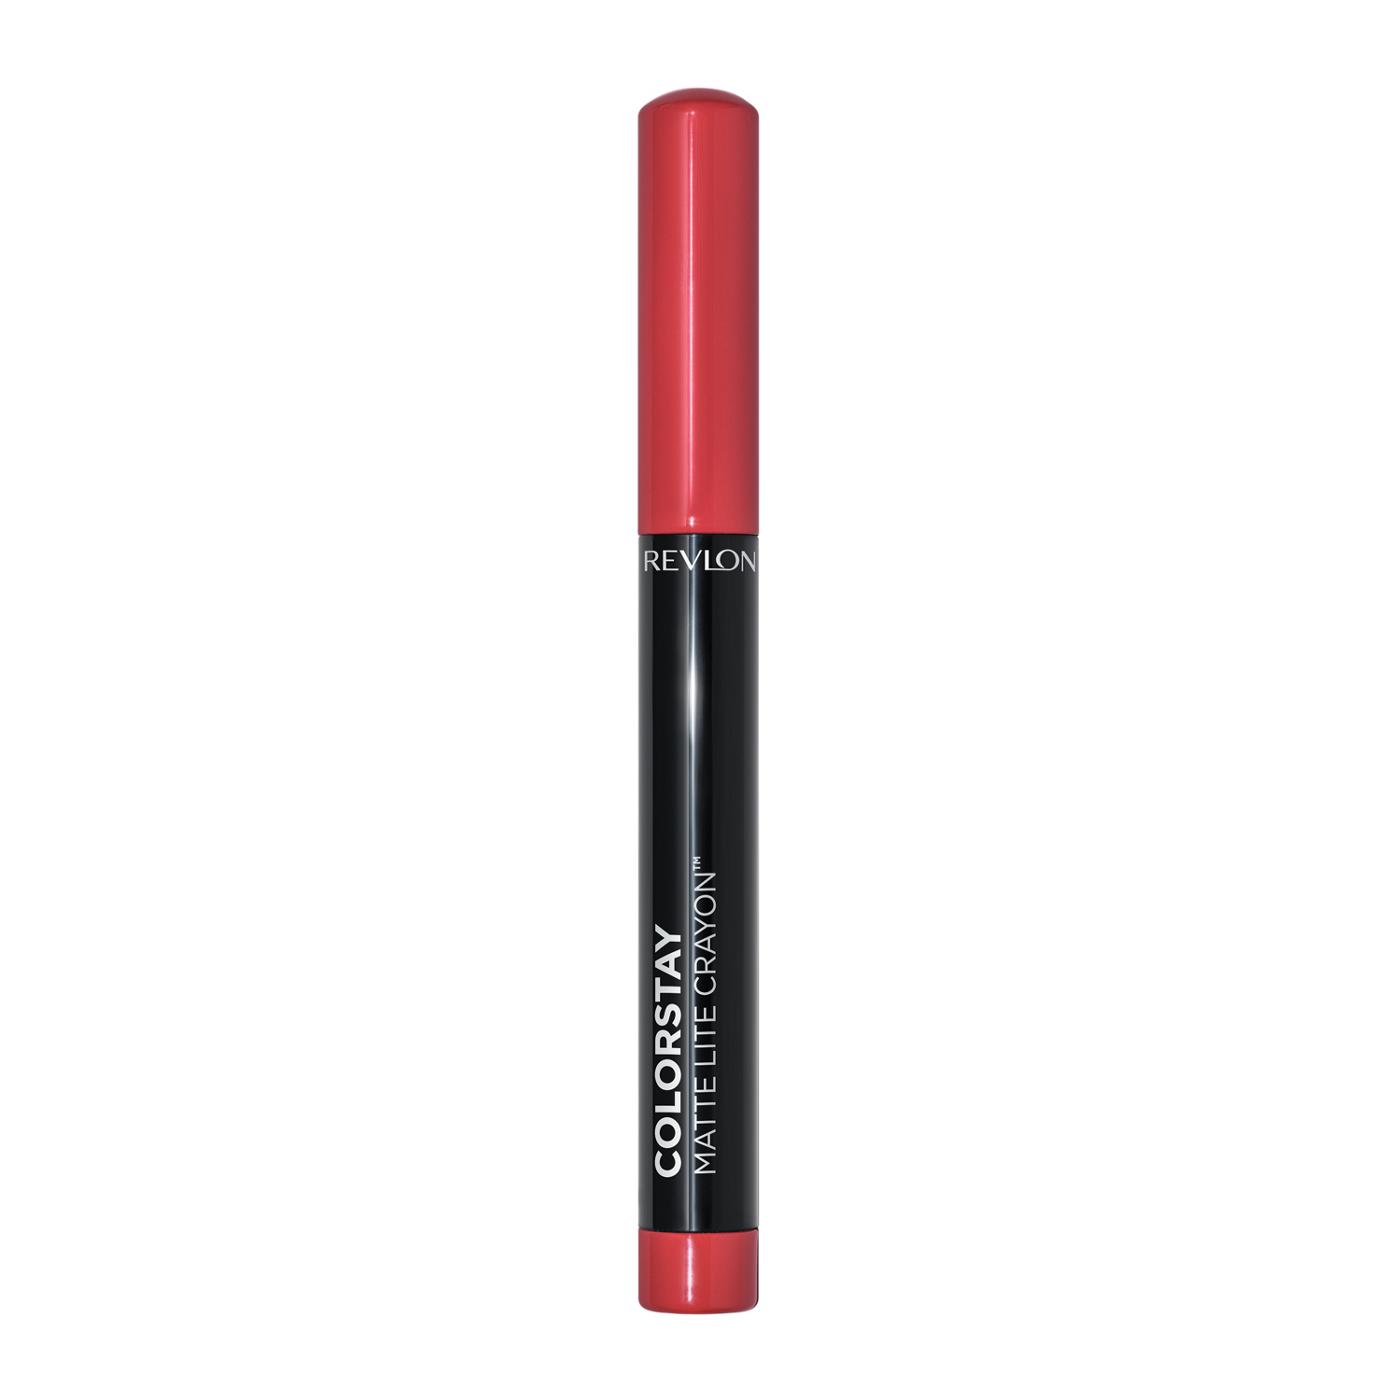 Revlon ColorStay Matte Lite Crayon Lipstick - She's Fly; image 1 of 7